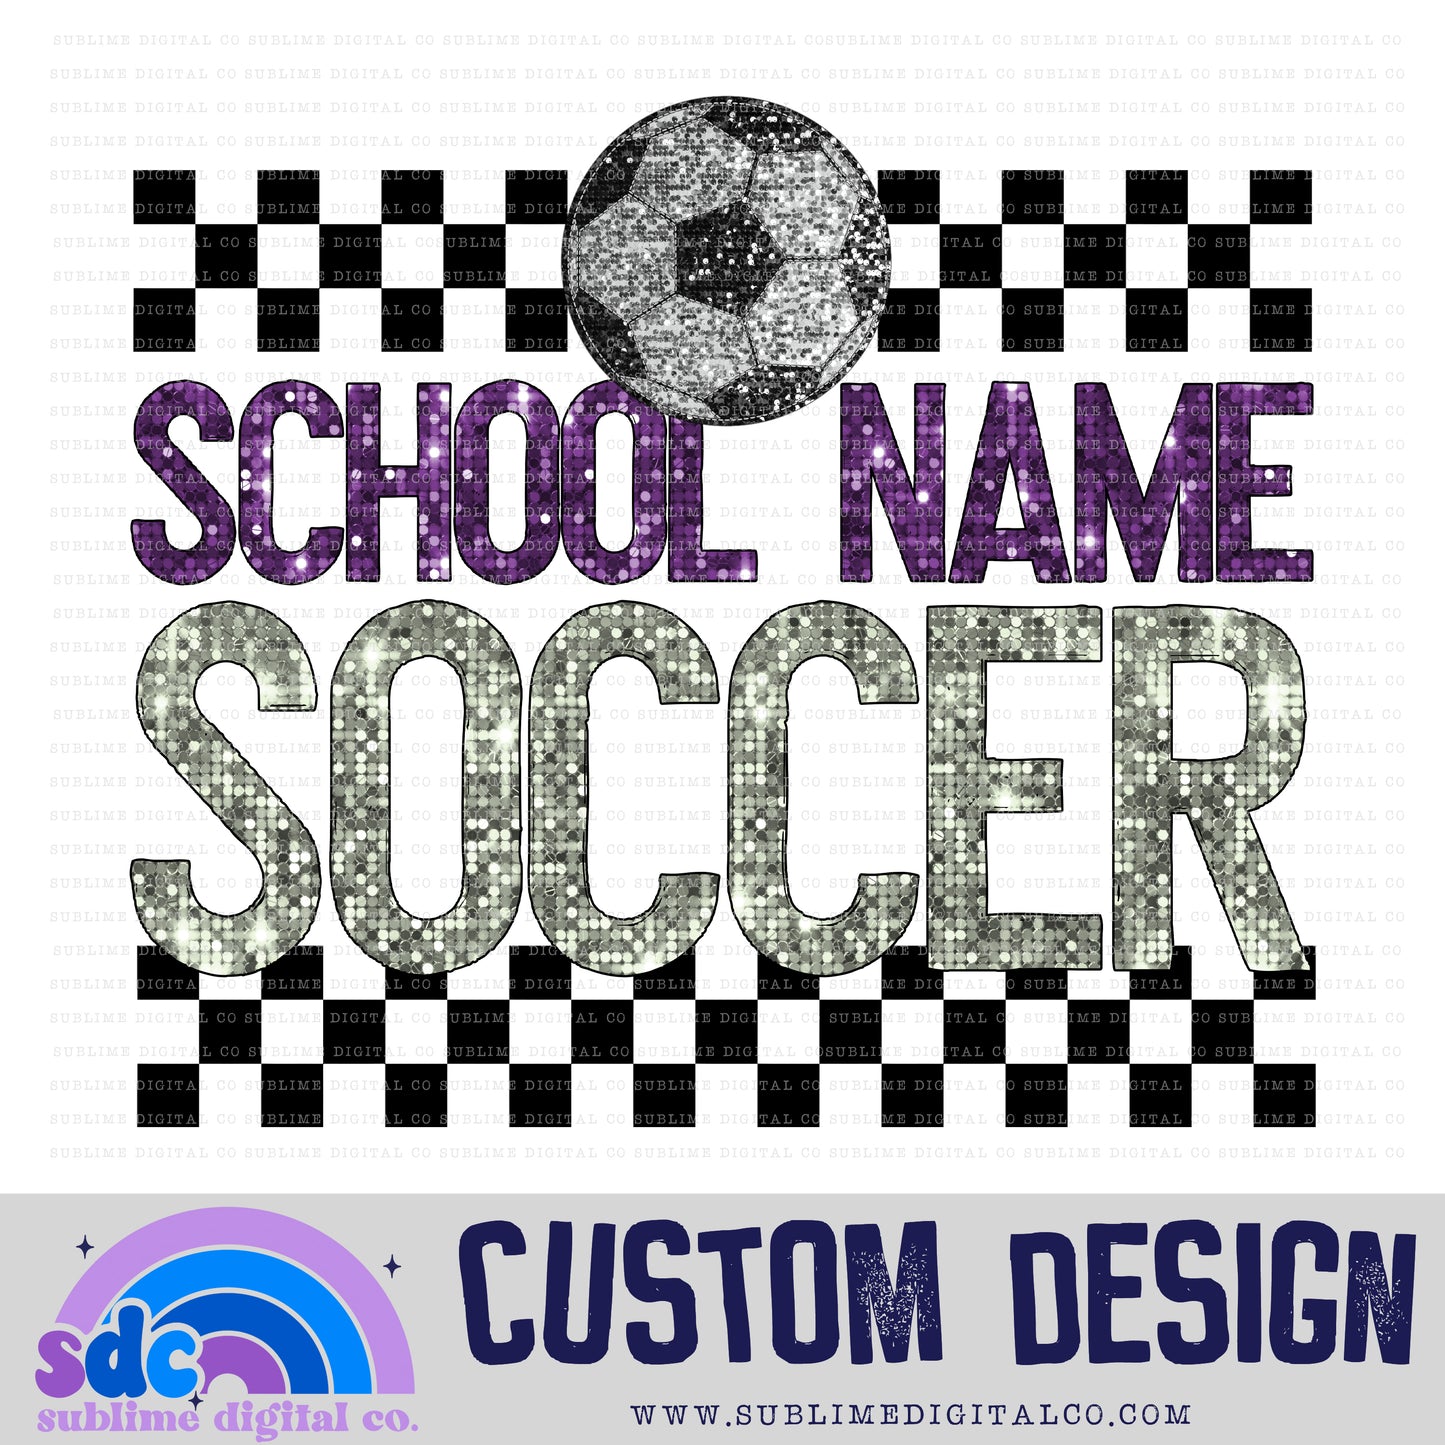 Soccer • Custom Design • Sports • Customs • Instant Download • Sublimation Design